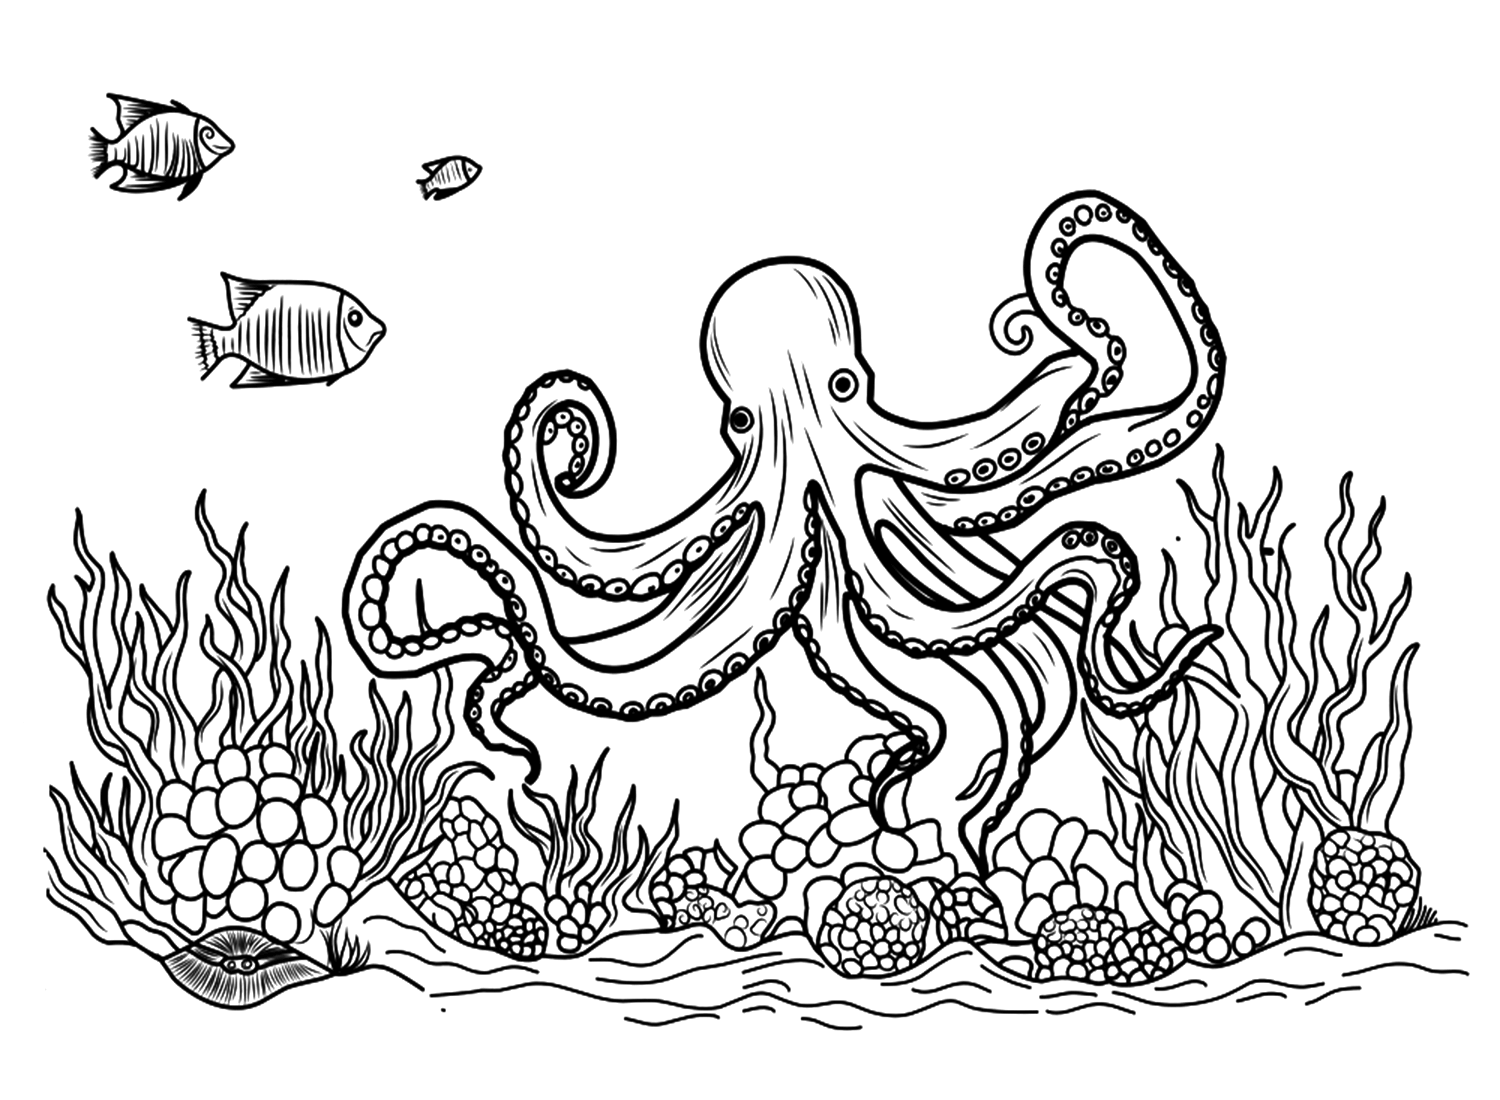 Реалистичная раскраска осьминога от Octopus